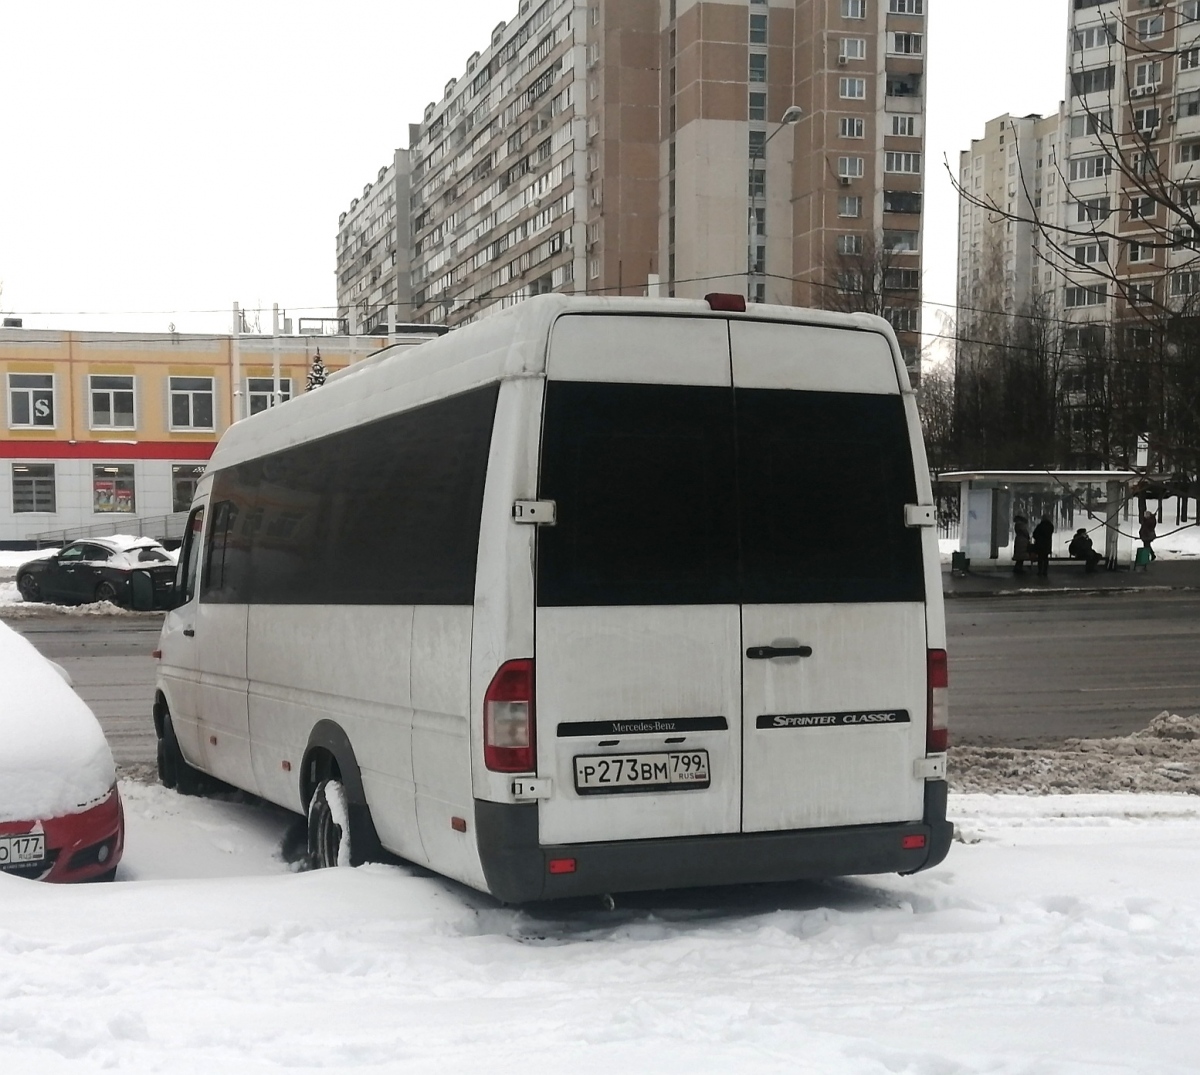 Москва. Луидор-223237 (Mercedes-Benz Sprinter) р273вм